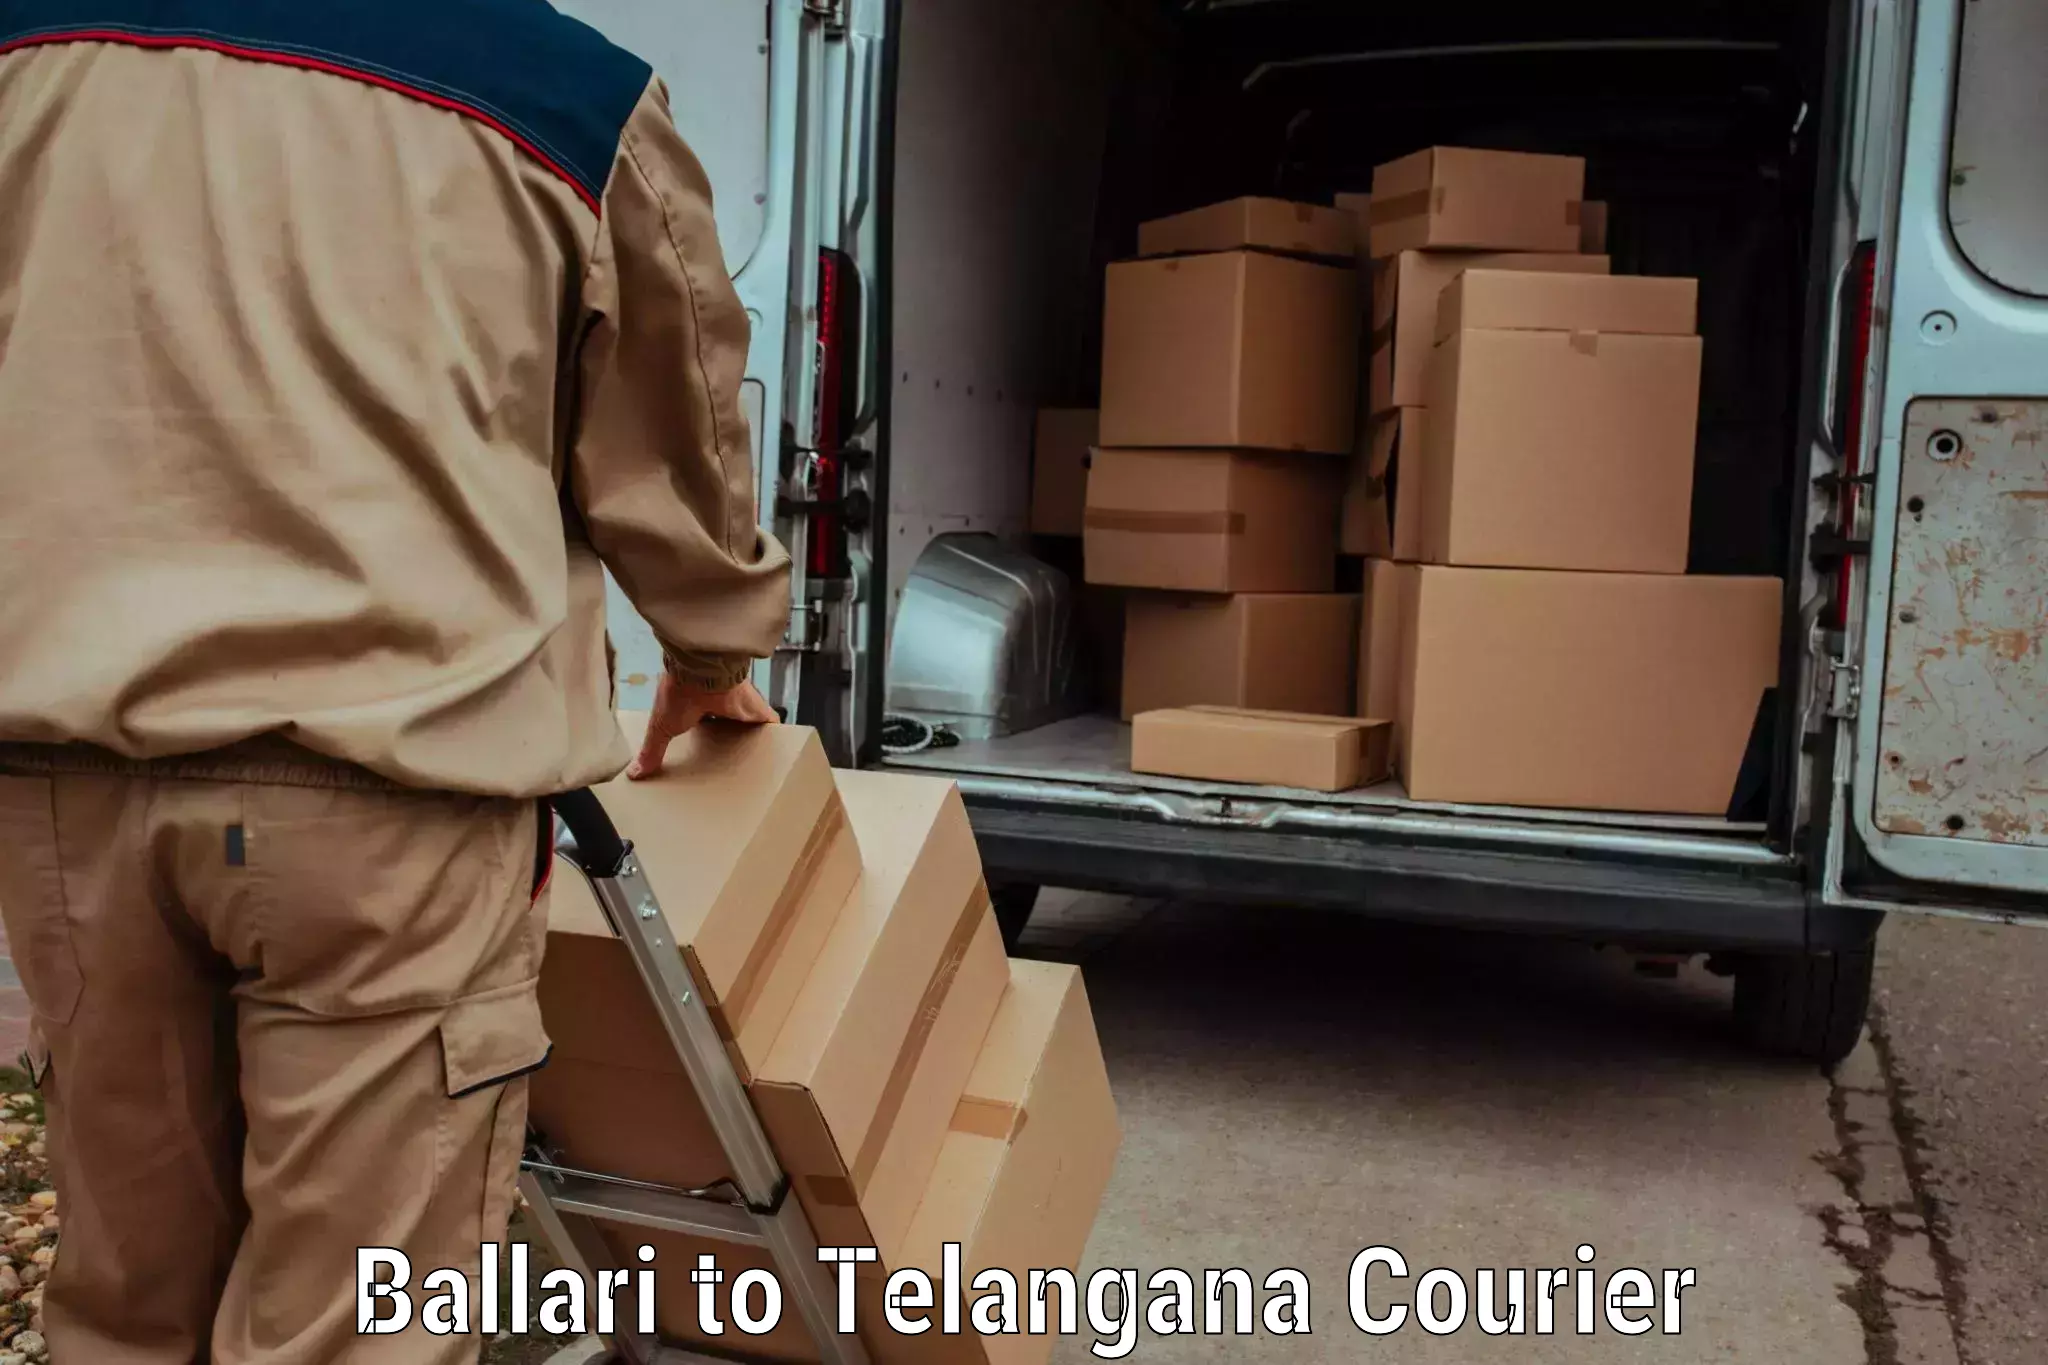 Automated luggage transport Ballari to Telangana